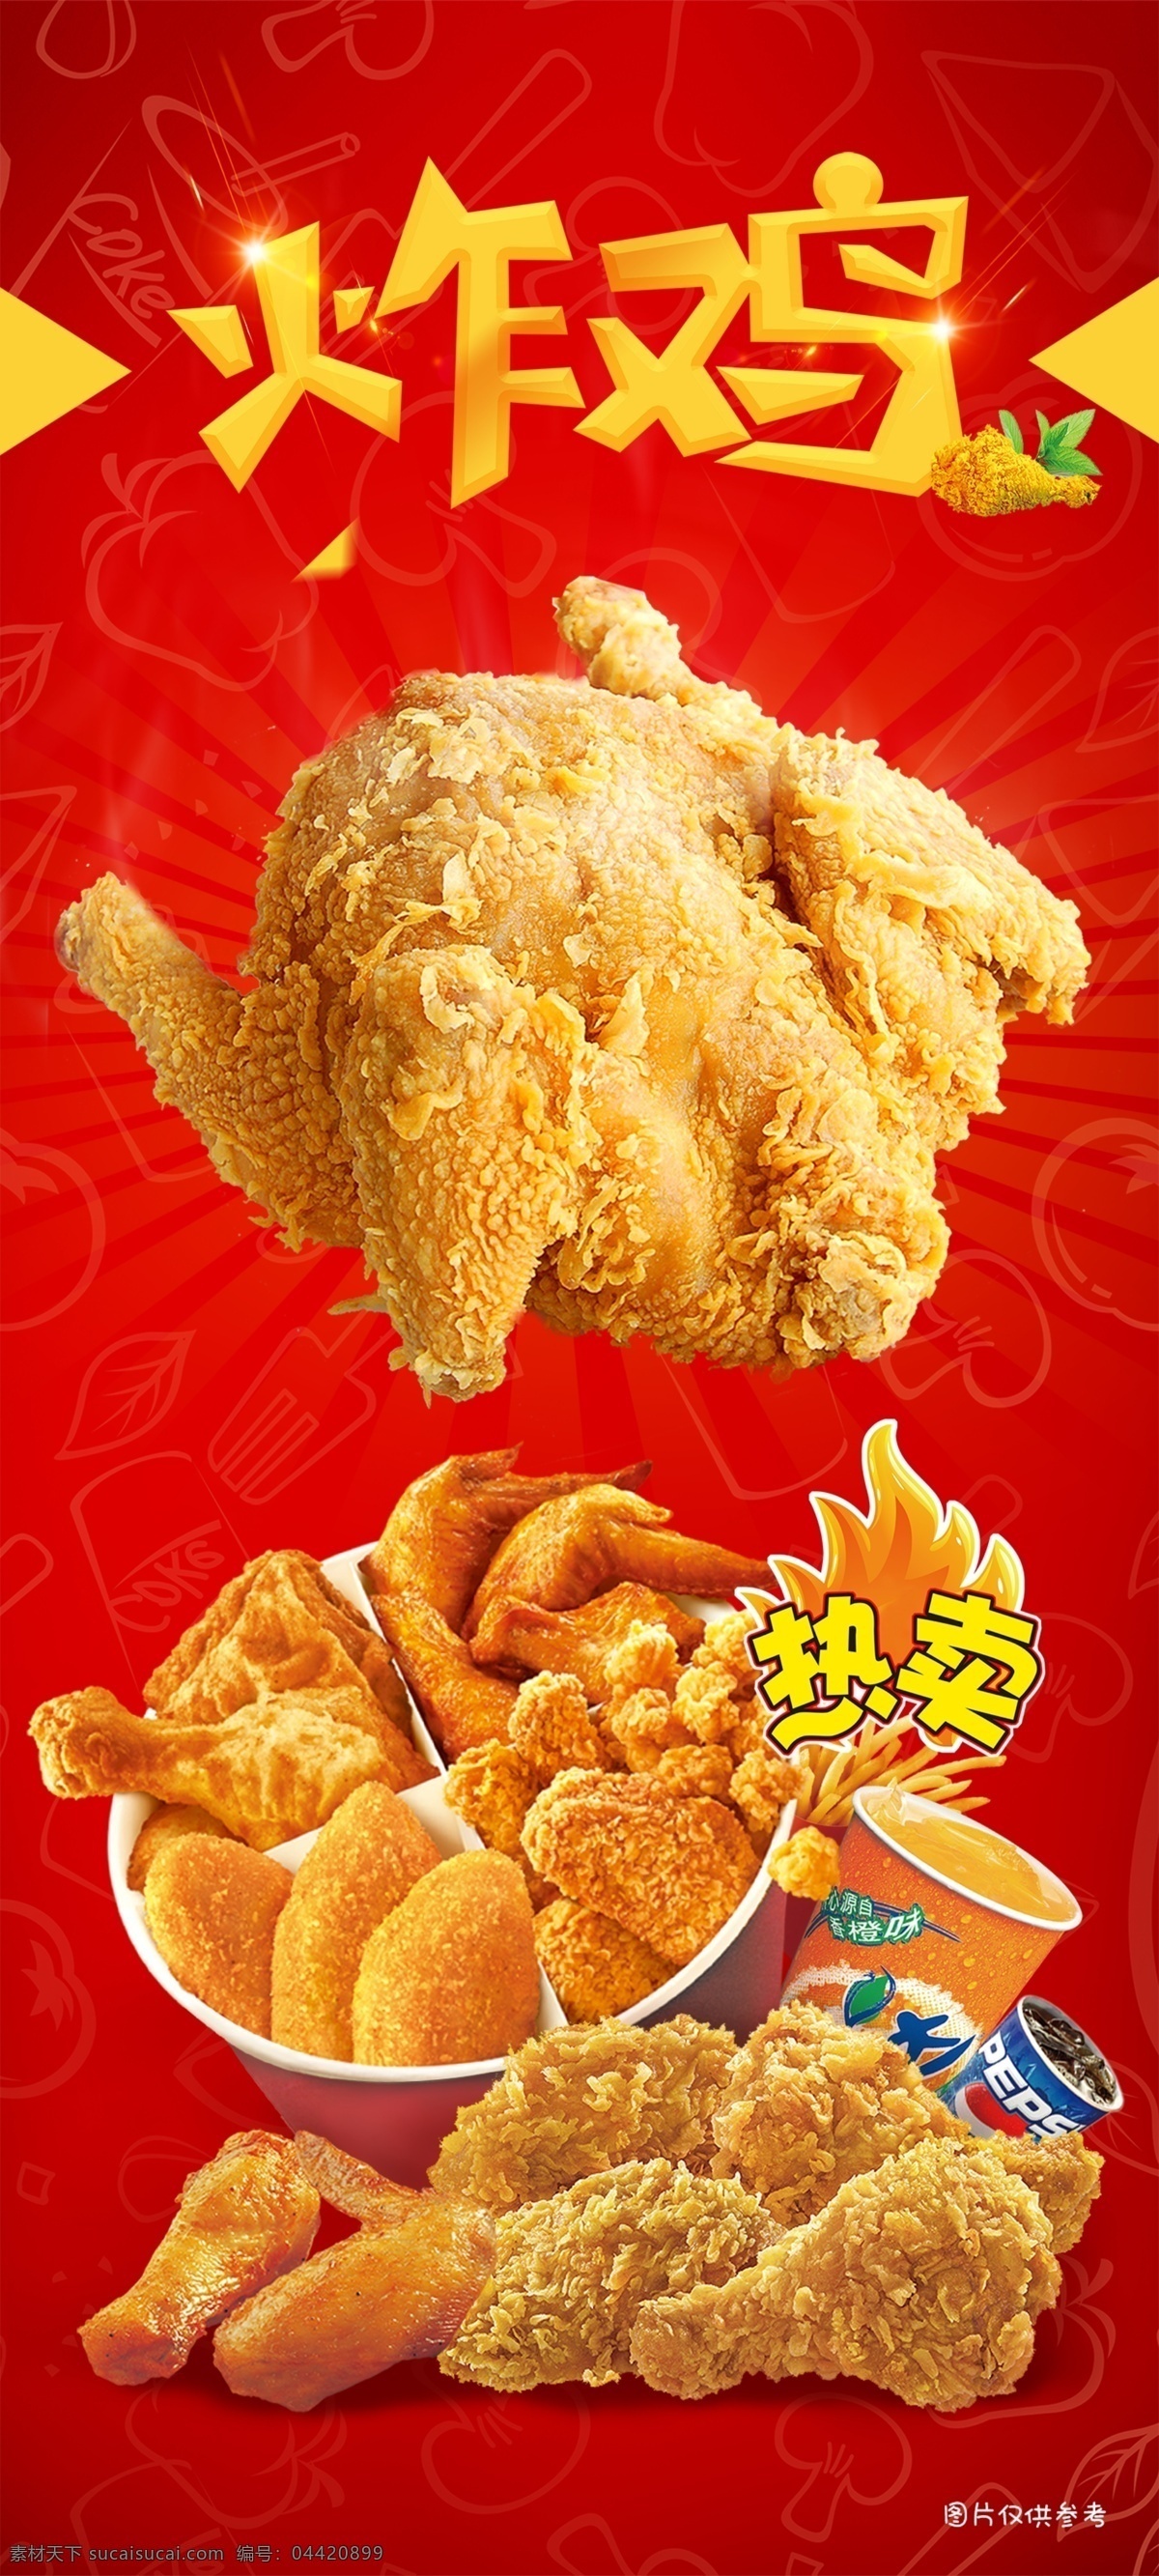 炸鸡广告 炸鸡 炸鸡腿 油炸 红色 炸鸡海报 分层